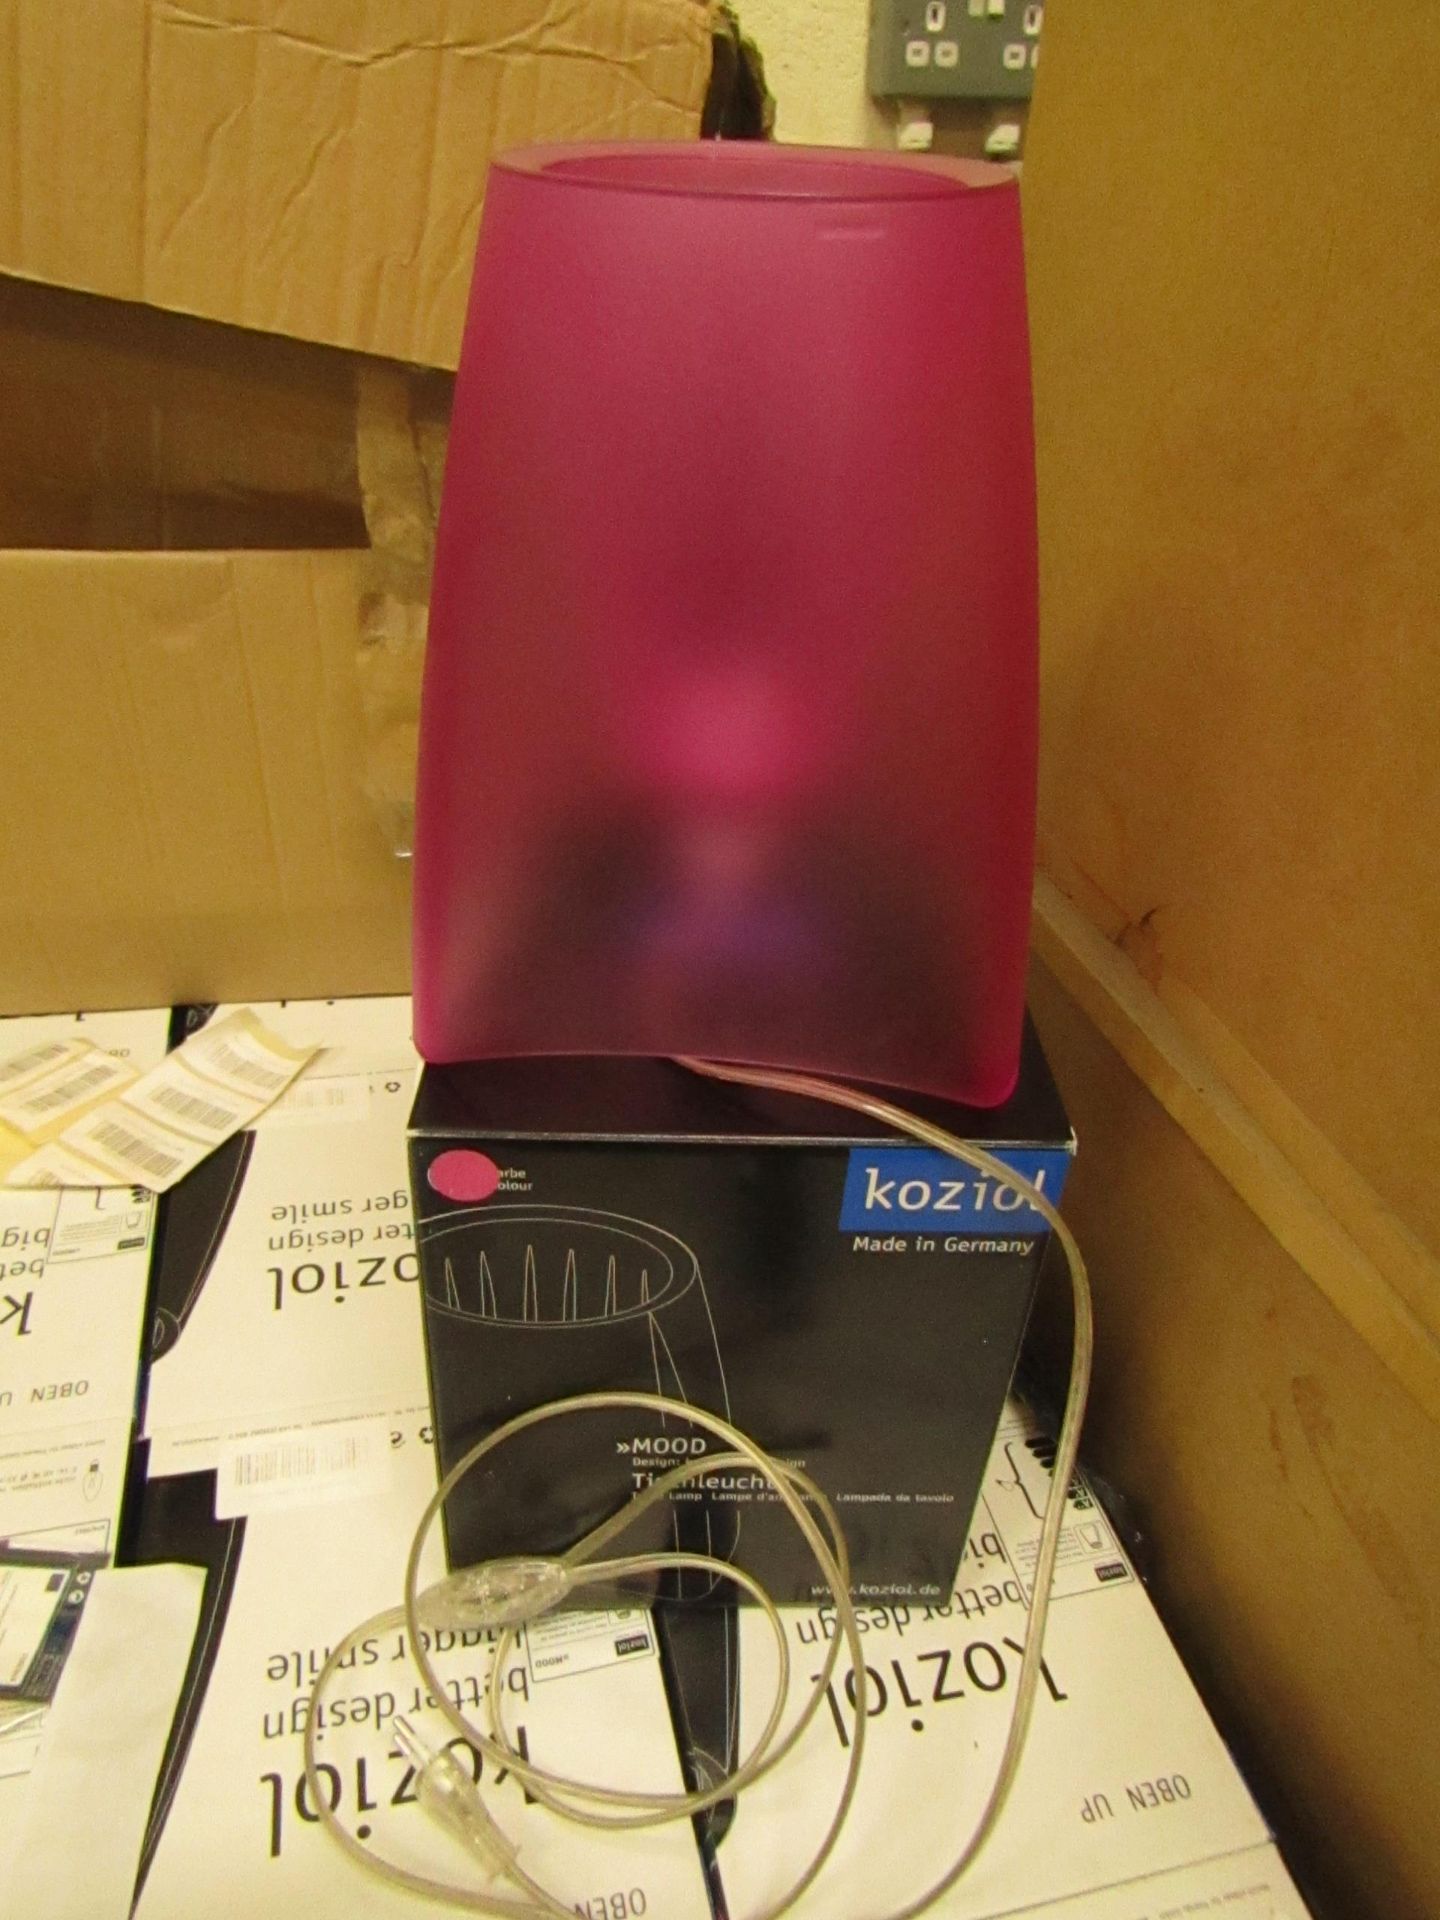 Koziol - Pink Table Lamp (EU Plug) - Unused & Boxed.